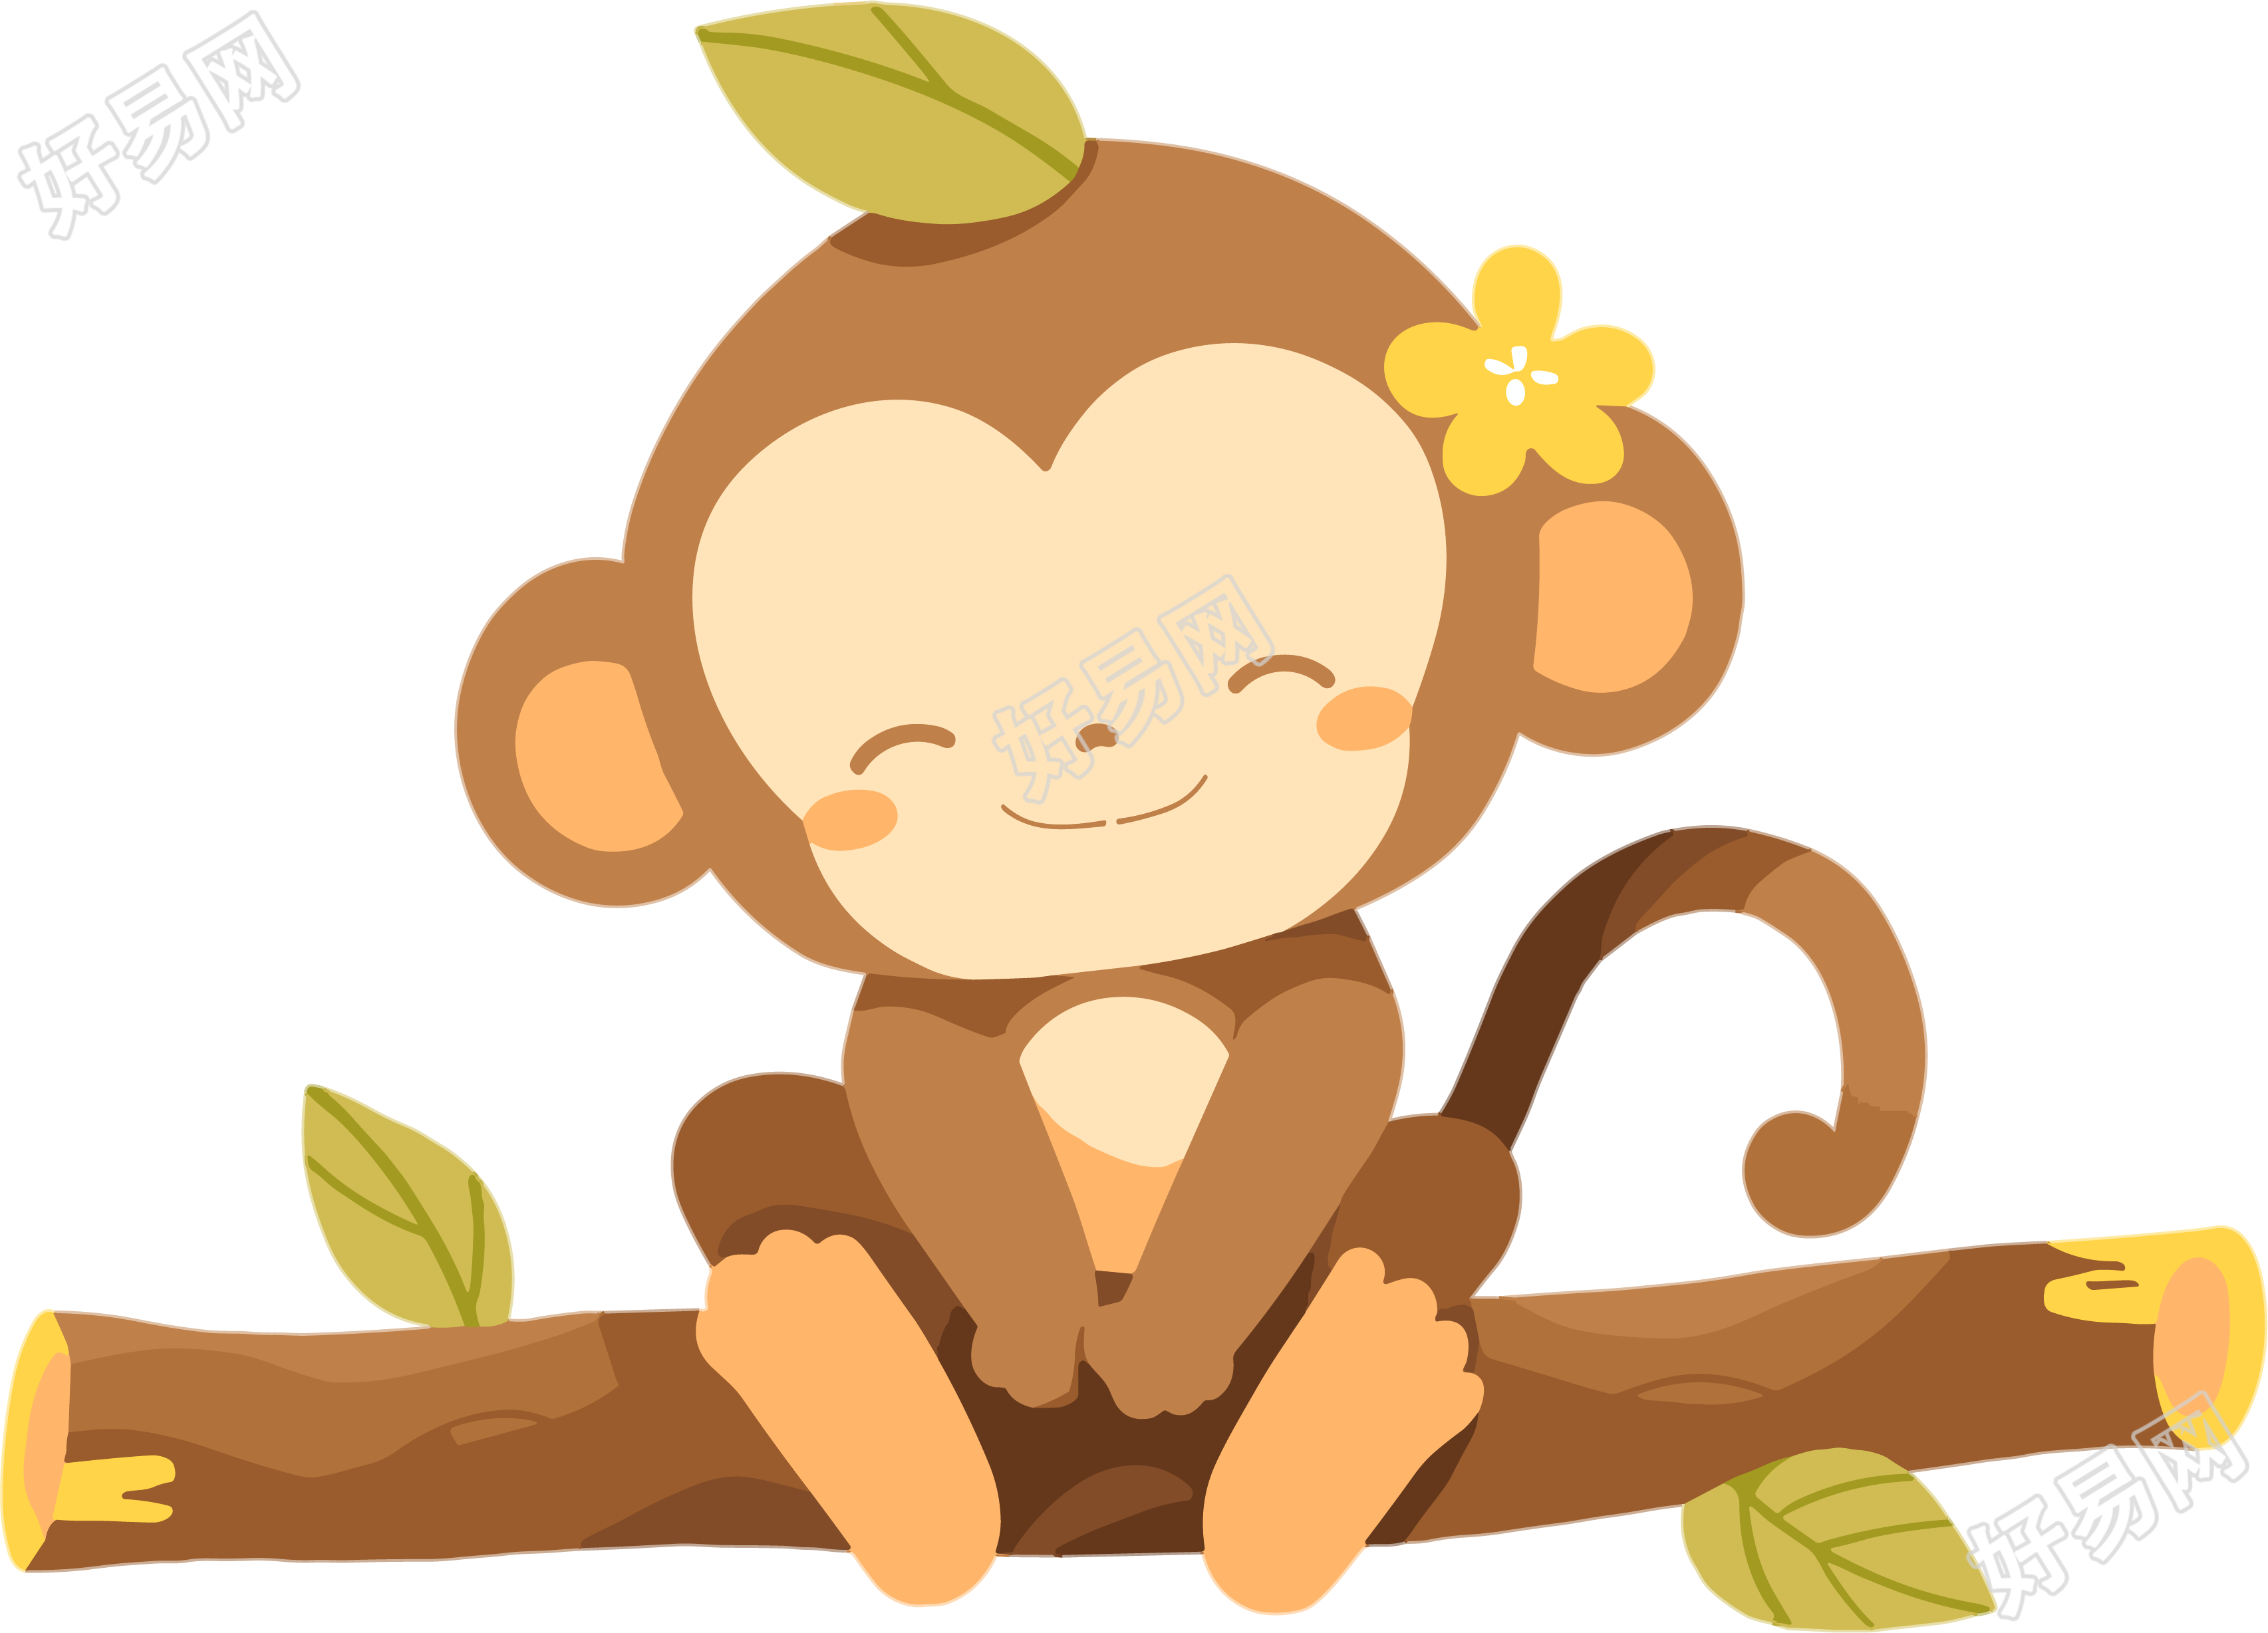 猴子卡通插画素材